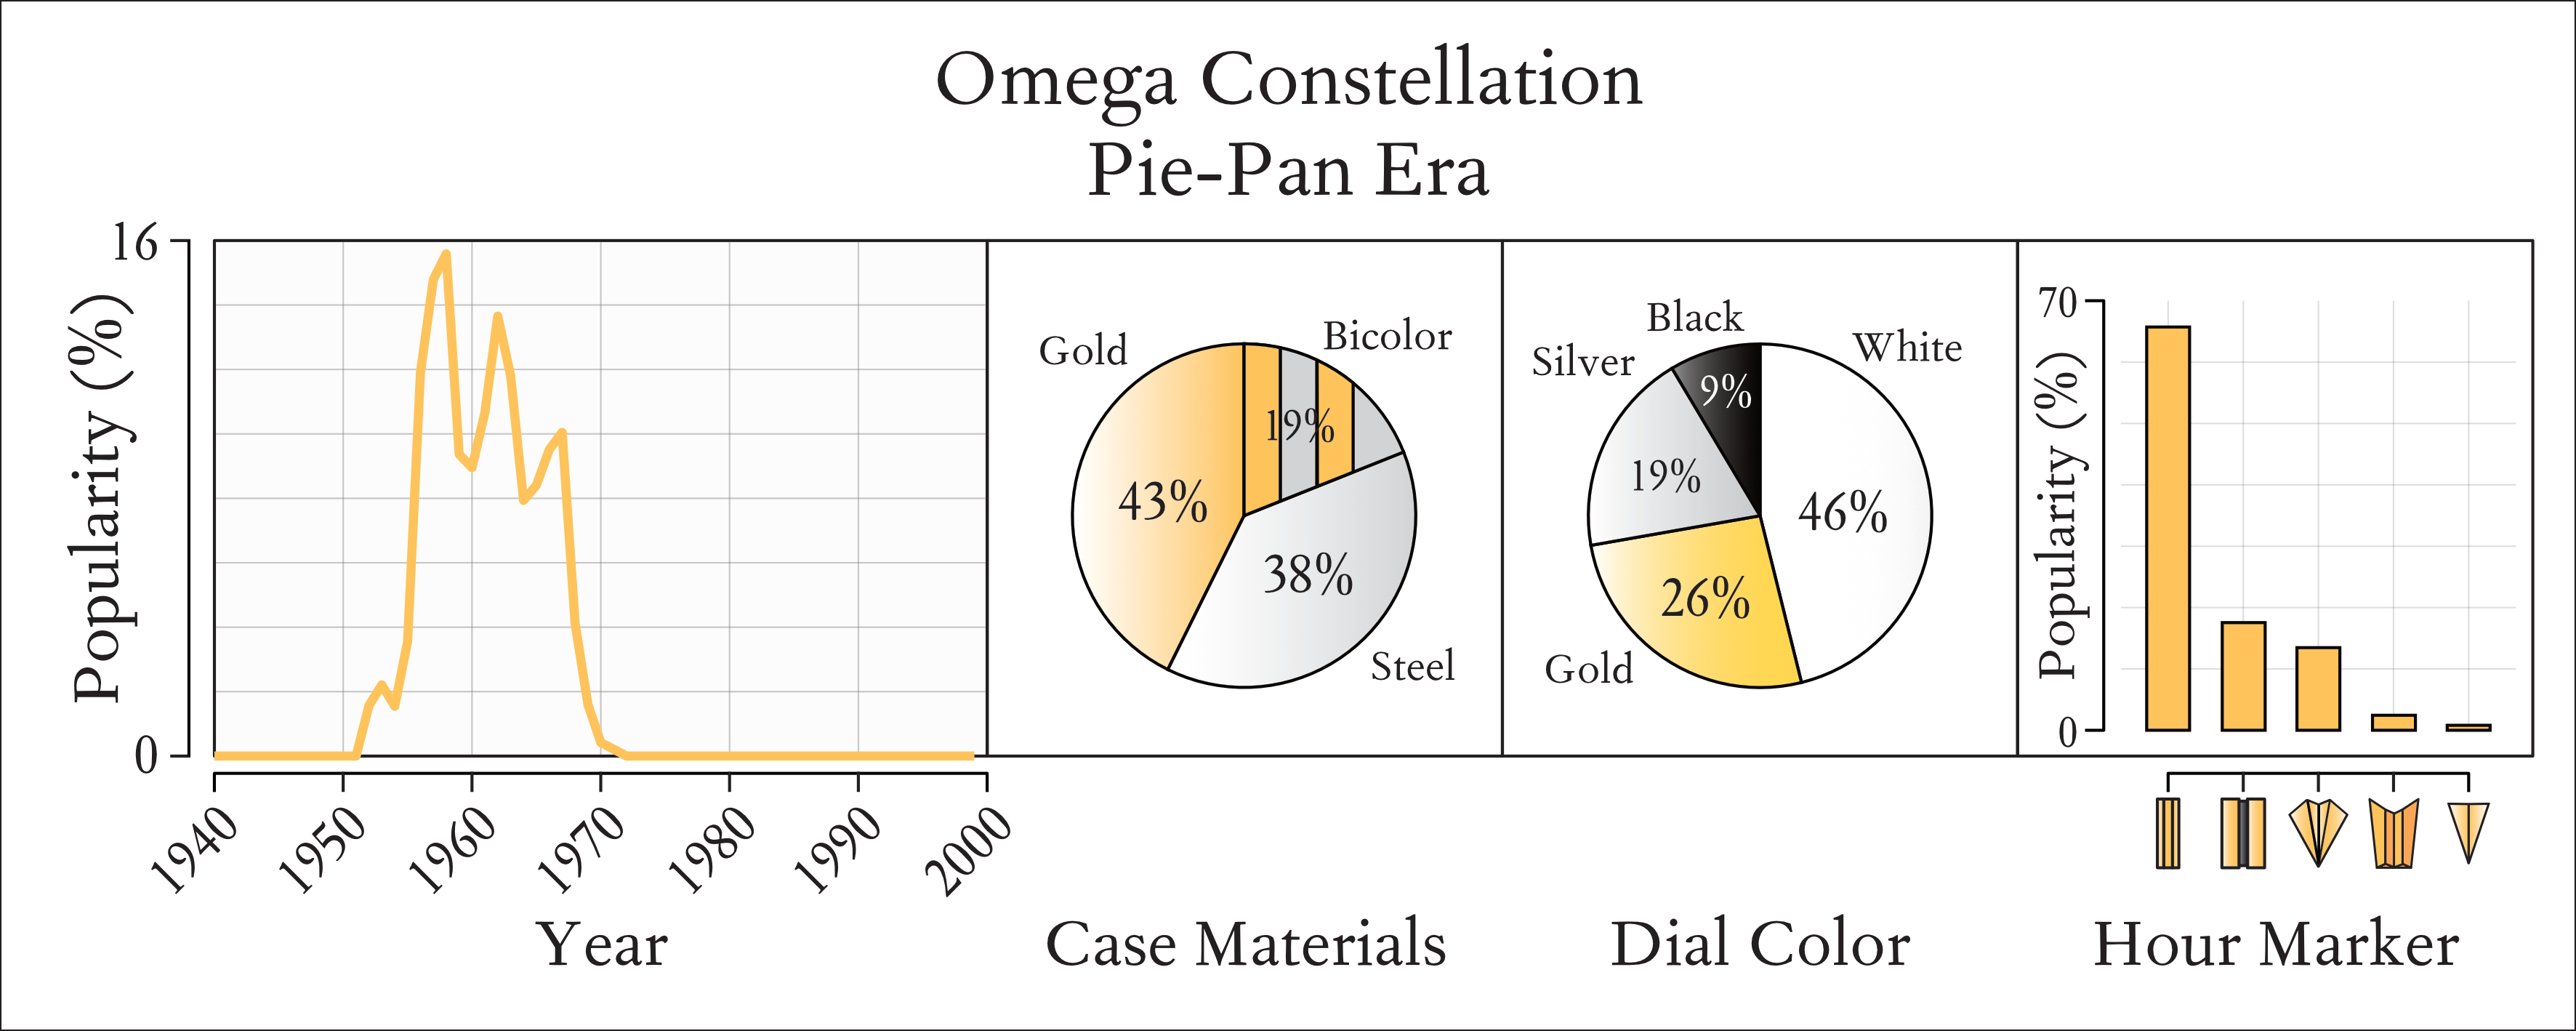 オメガ・コンステレーション・パイパンの定量的ガイド。当時のオメガ・ウォッチ全体に対する相対的な人気度（左）、ケース素材（左中）、ダイヤルカラー（右中）、アワーマーカー（右）の分布を示す。データはChrono24より